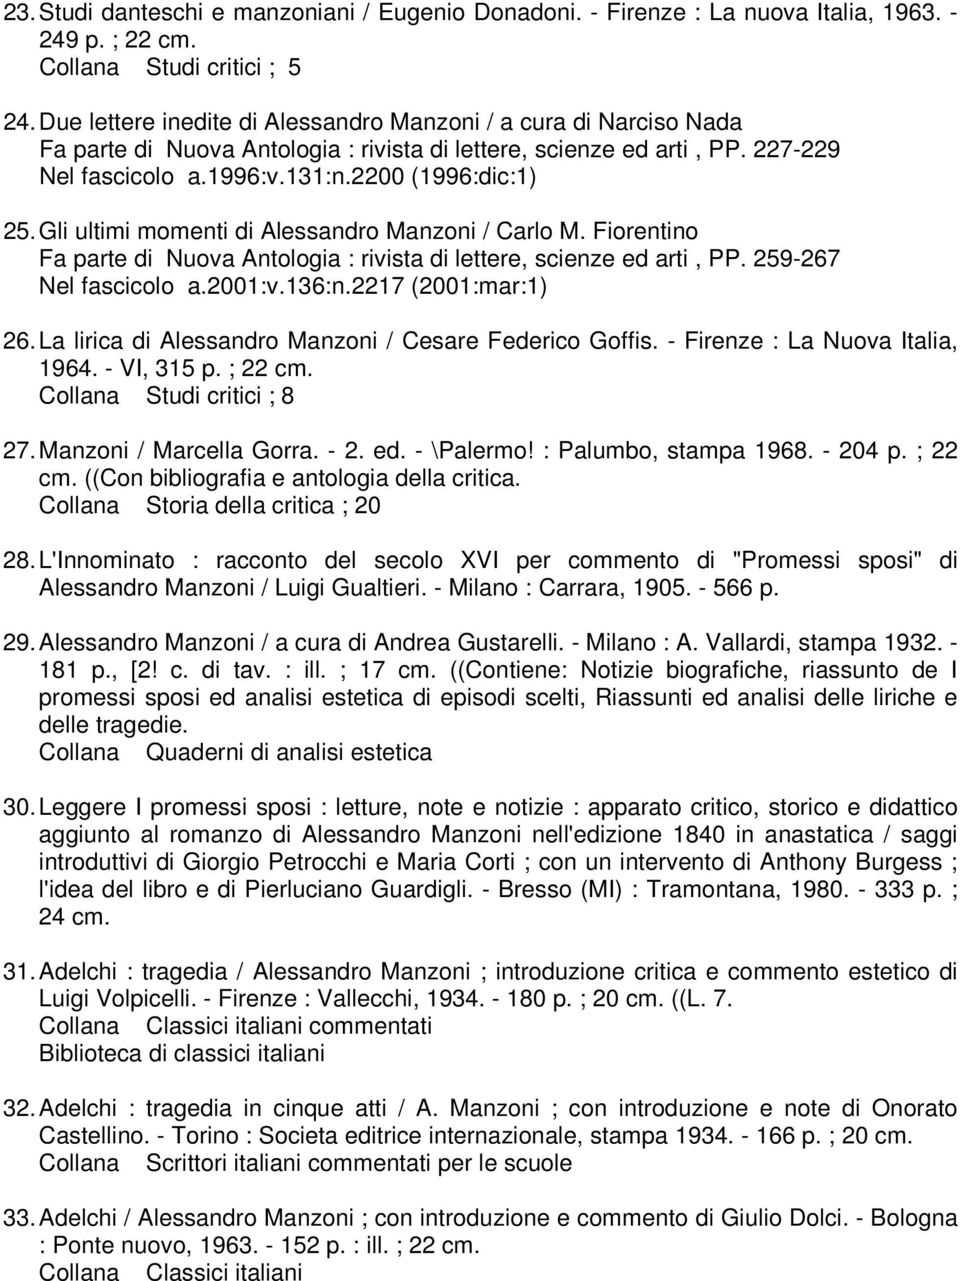 Gli ultimi momenti di Alessandro Manzoni / Carlo M. Fiorentino Fa parte di Nuova Antologia : rivista di lettere, scienze ed arti, PP. 259-267 Nel fascicolo a.2001:v.136:n.2217 (2001:mar:1) 26.